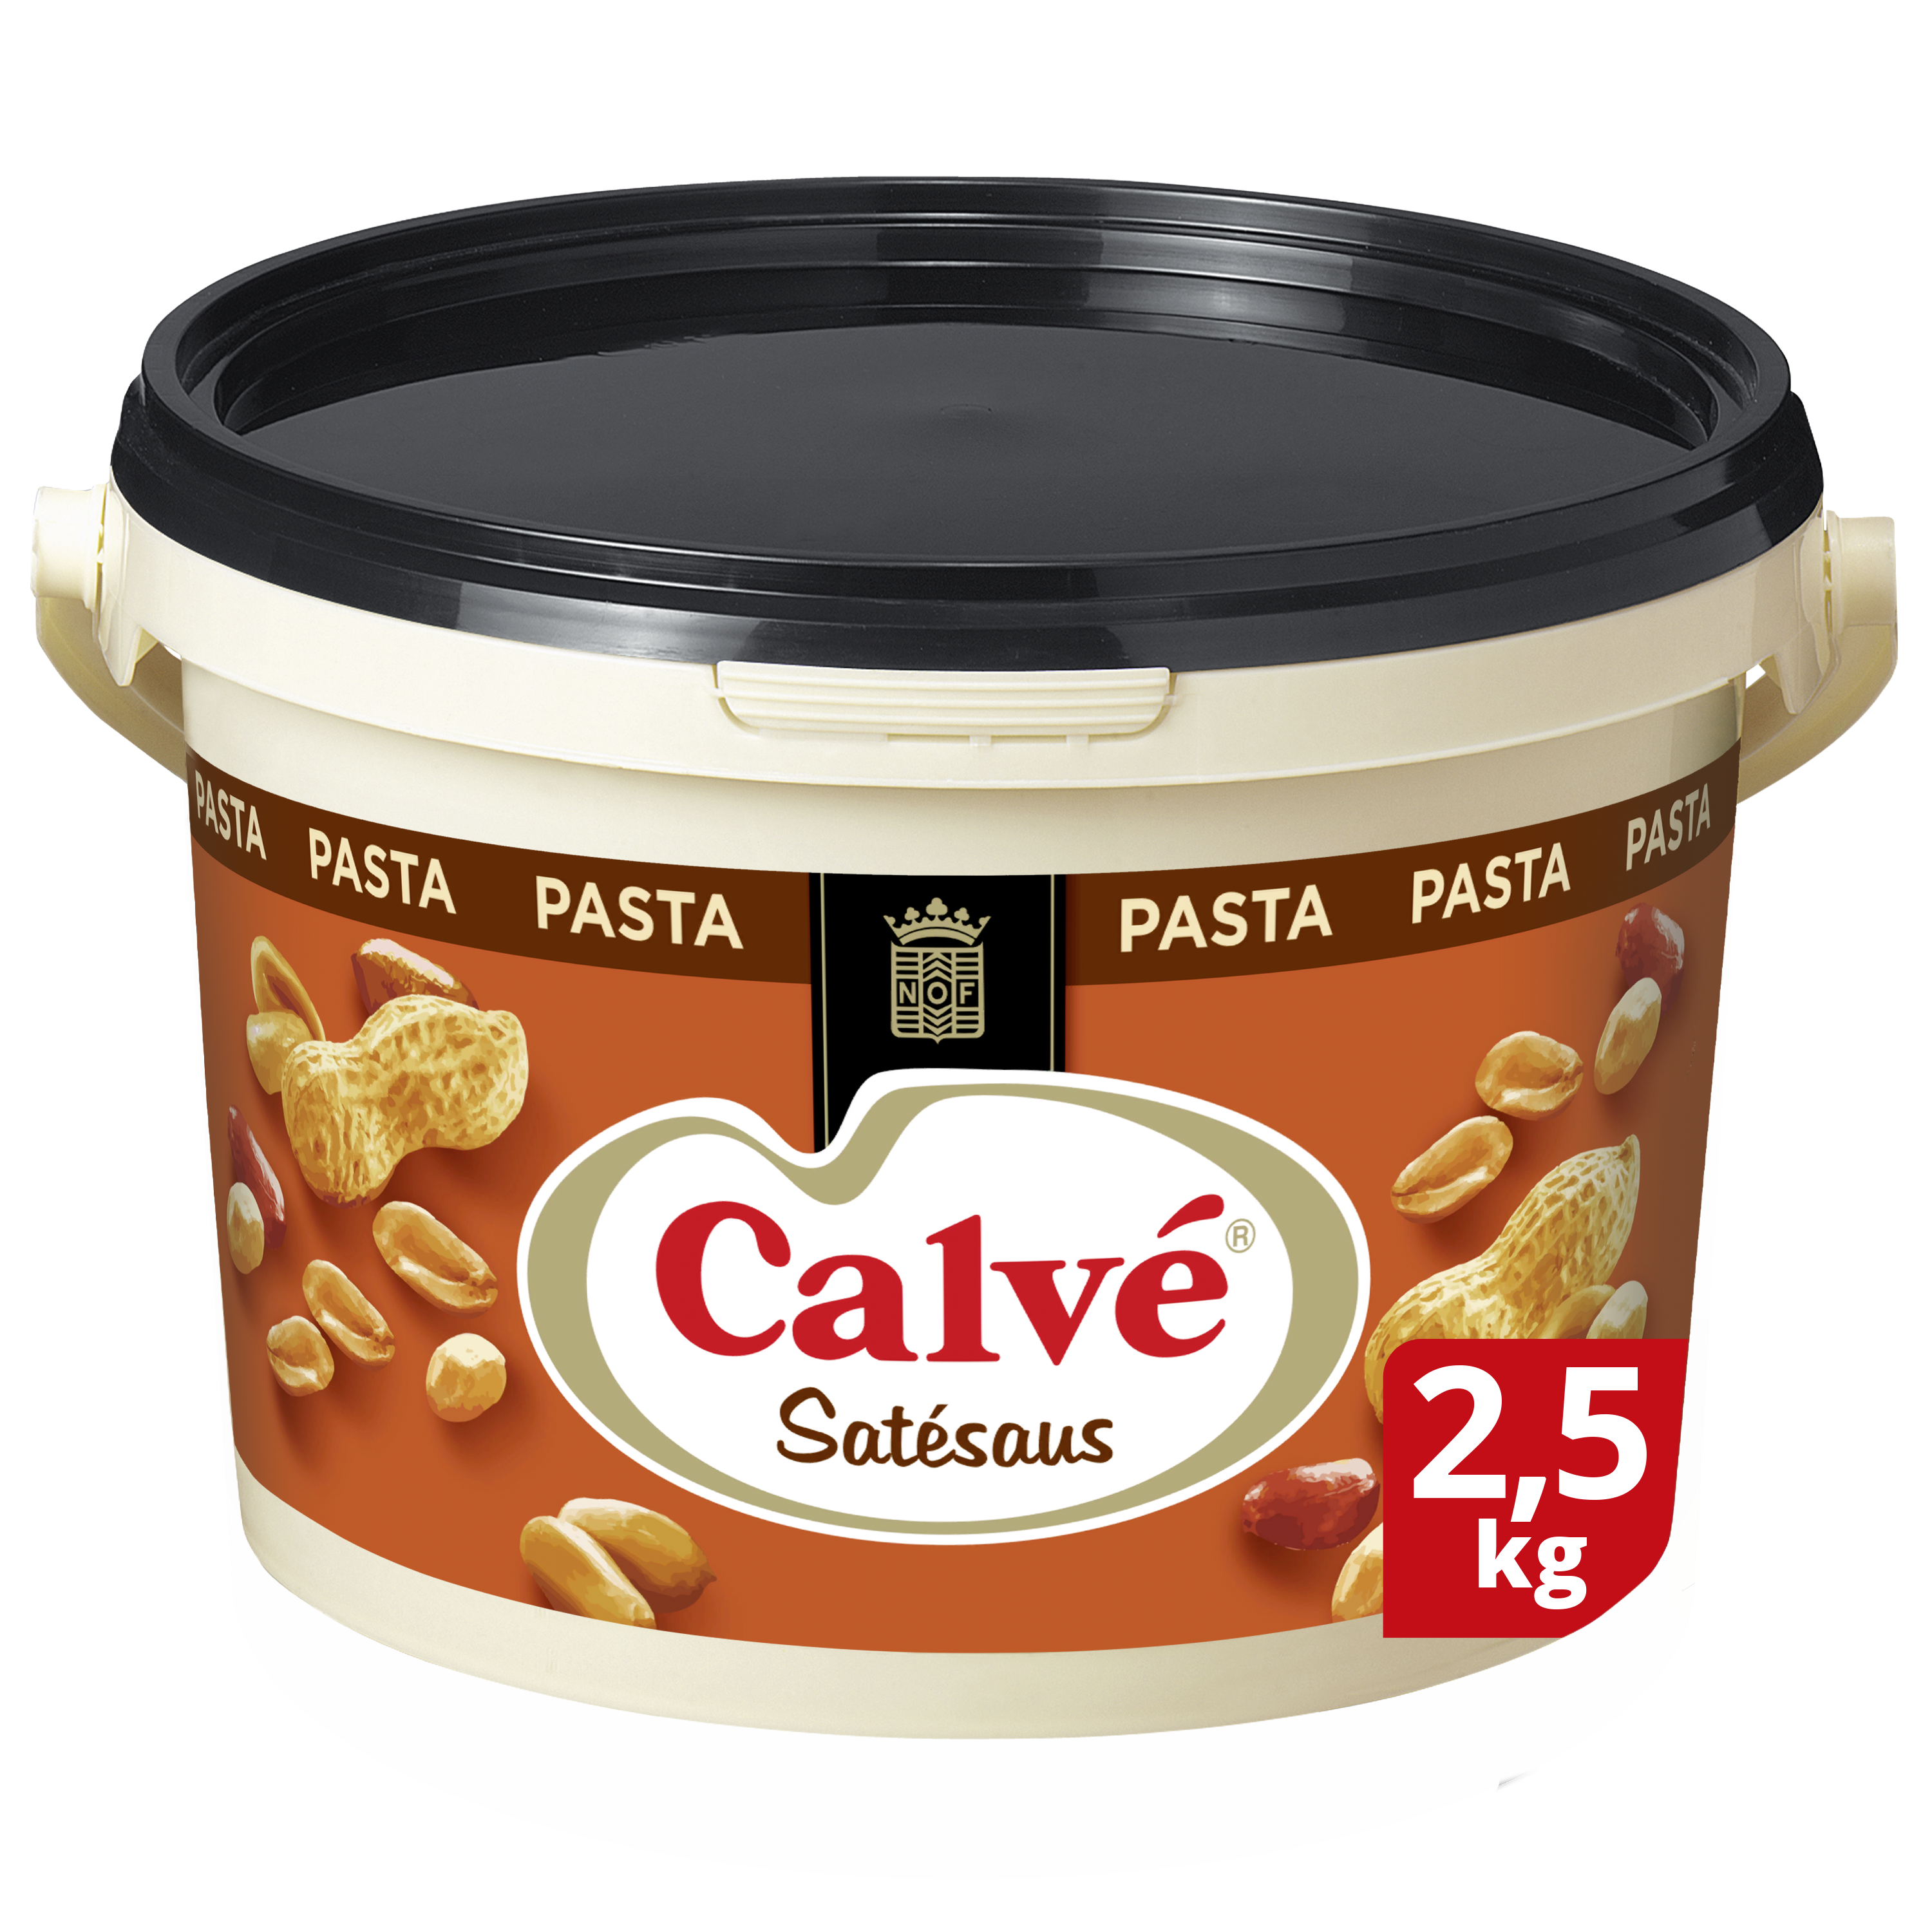 Calvé Satésaus Pasta 2,5kg - Calvé geeft een authentieke pindasmaak aan jouw satésaus